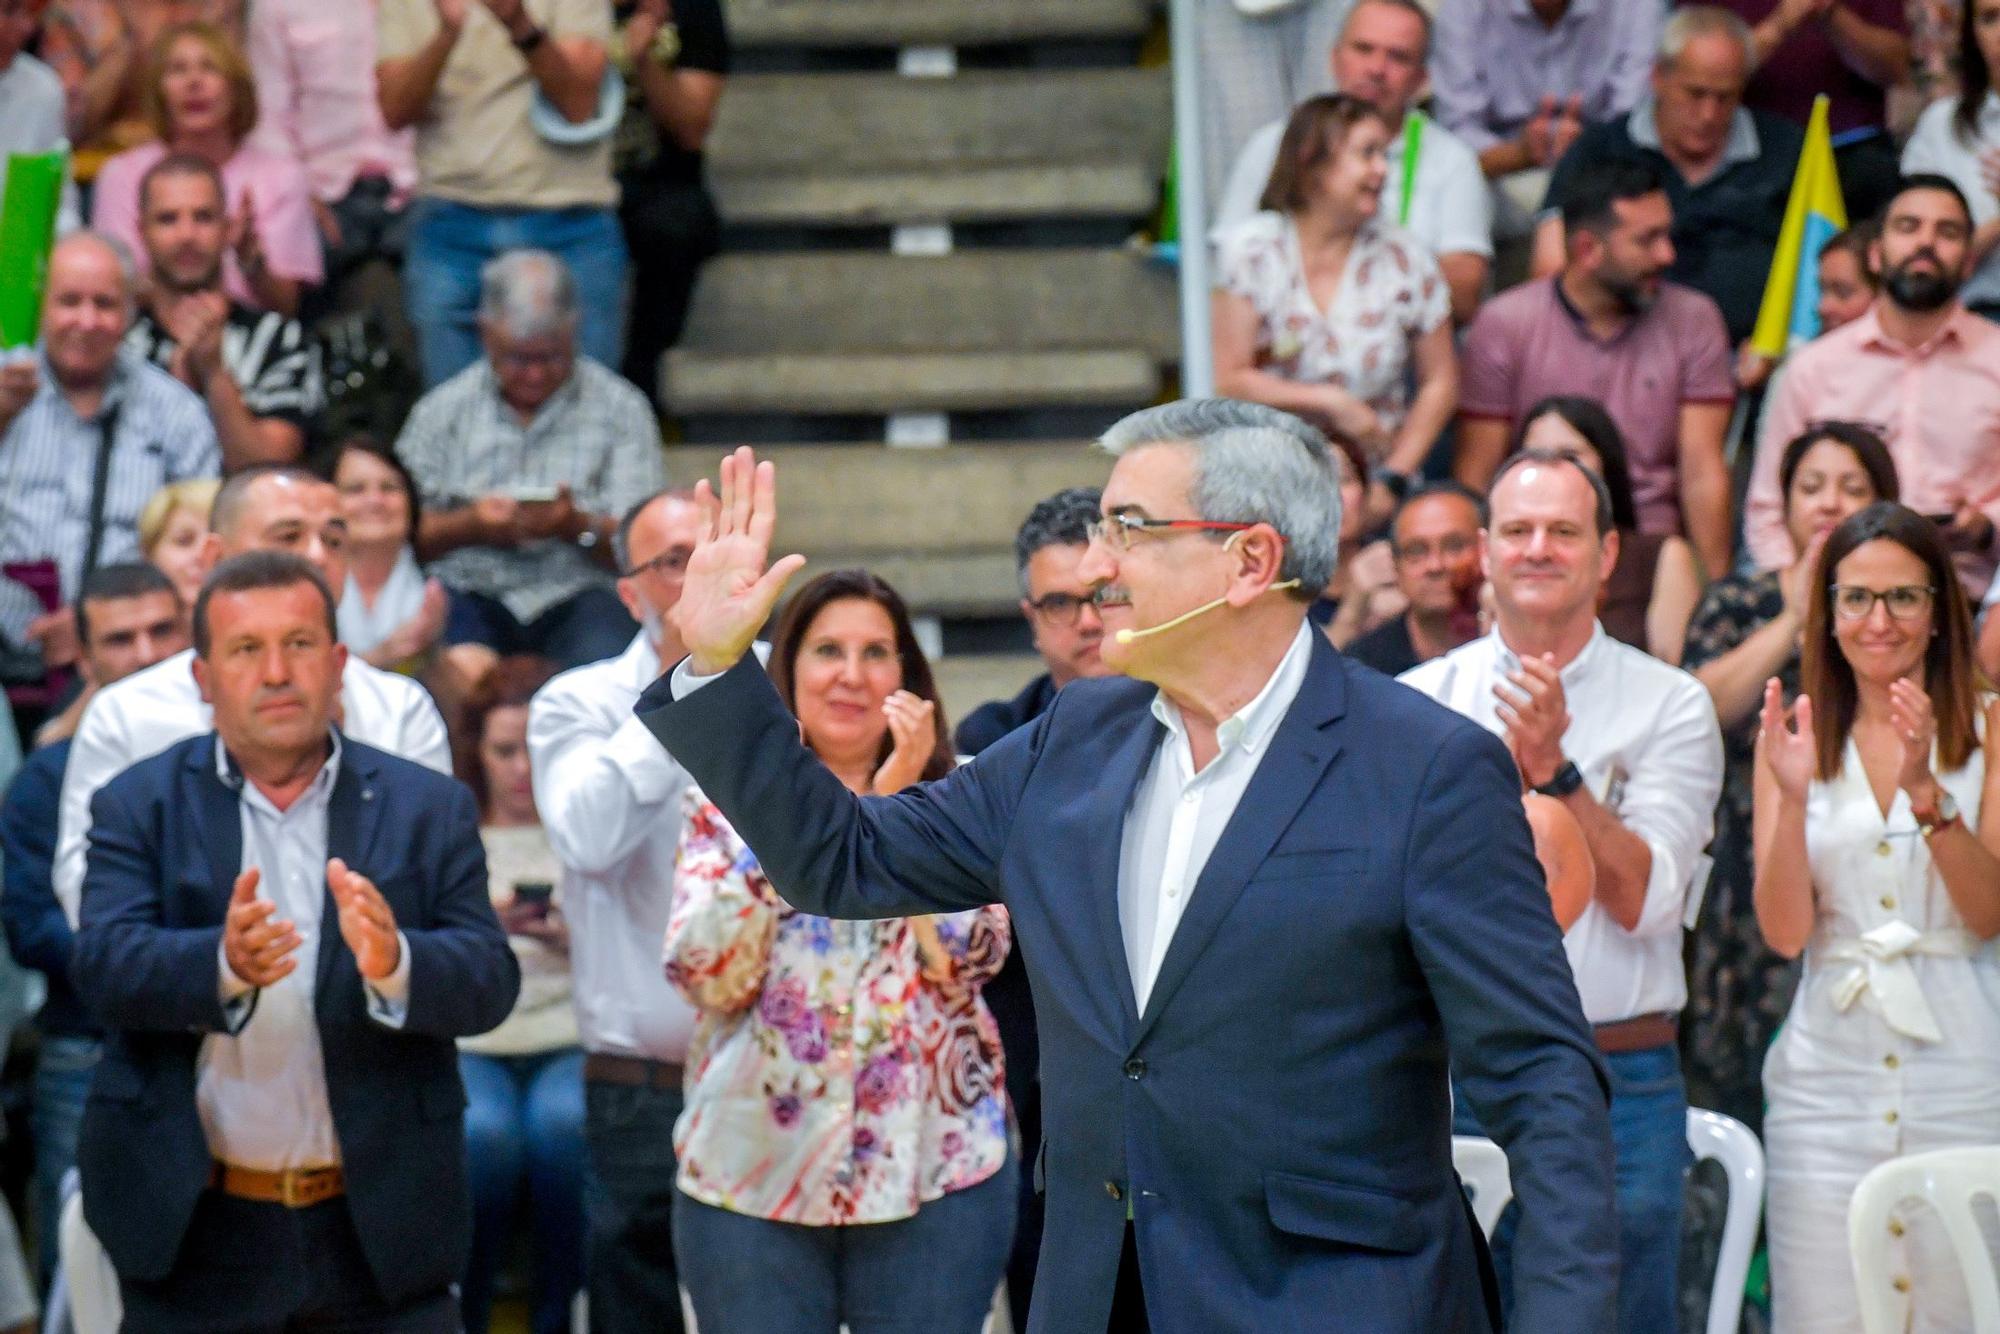 Presentación de candidaturas de Nuevas Canarias a las elecciones del 28M